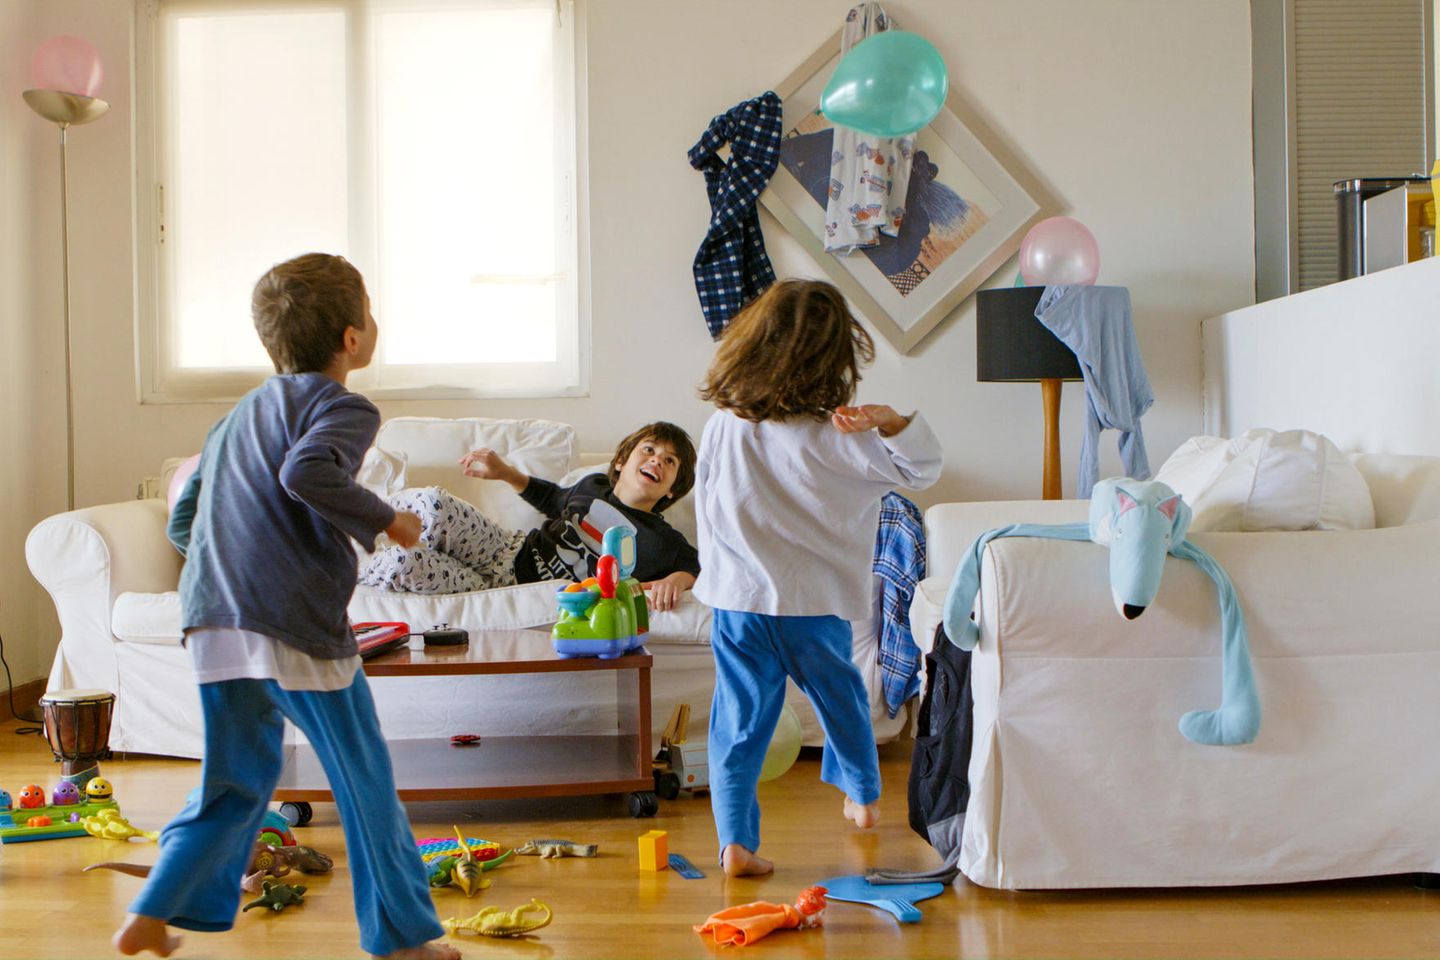 Hoch lebe das Chaos: Kinder spielen im Wohnzimmer